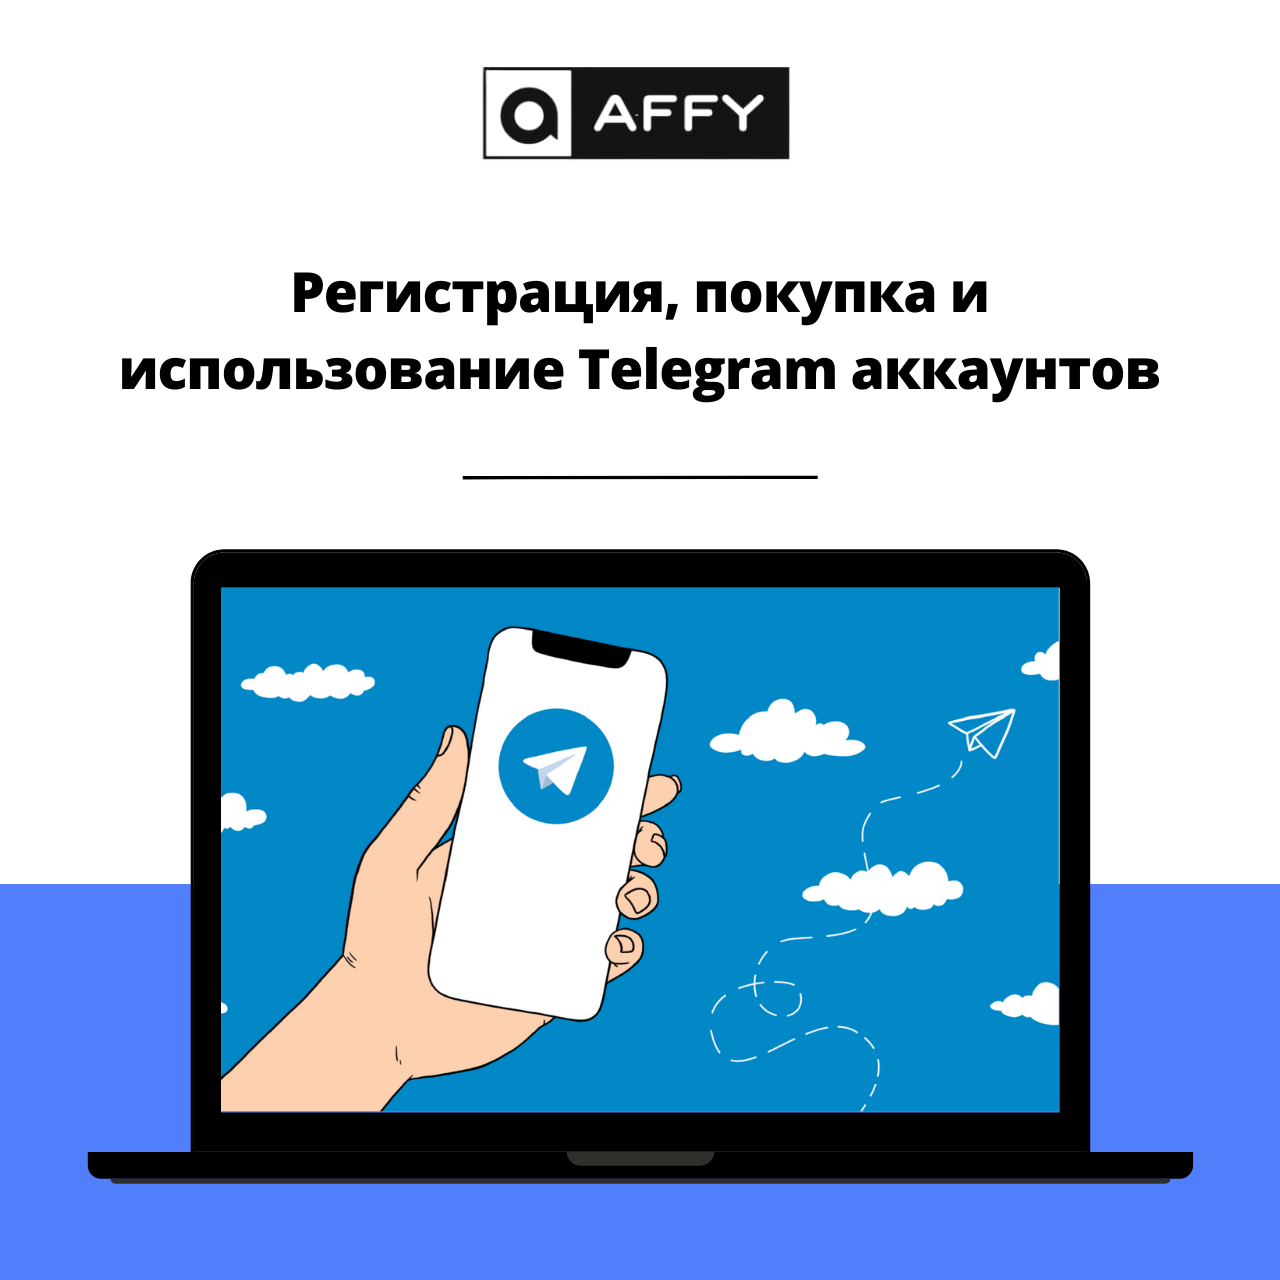 Как восстановить аккаунт телеграмм если потерял телефон фото 101